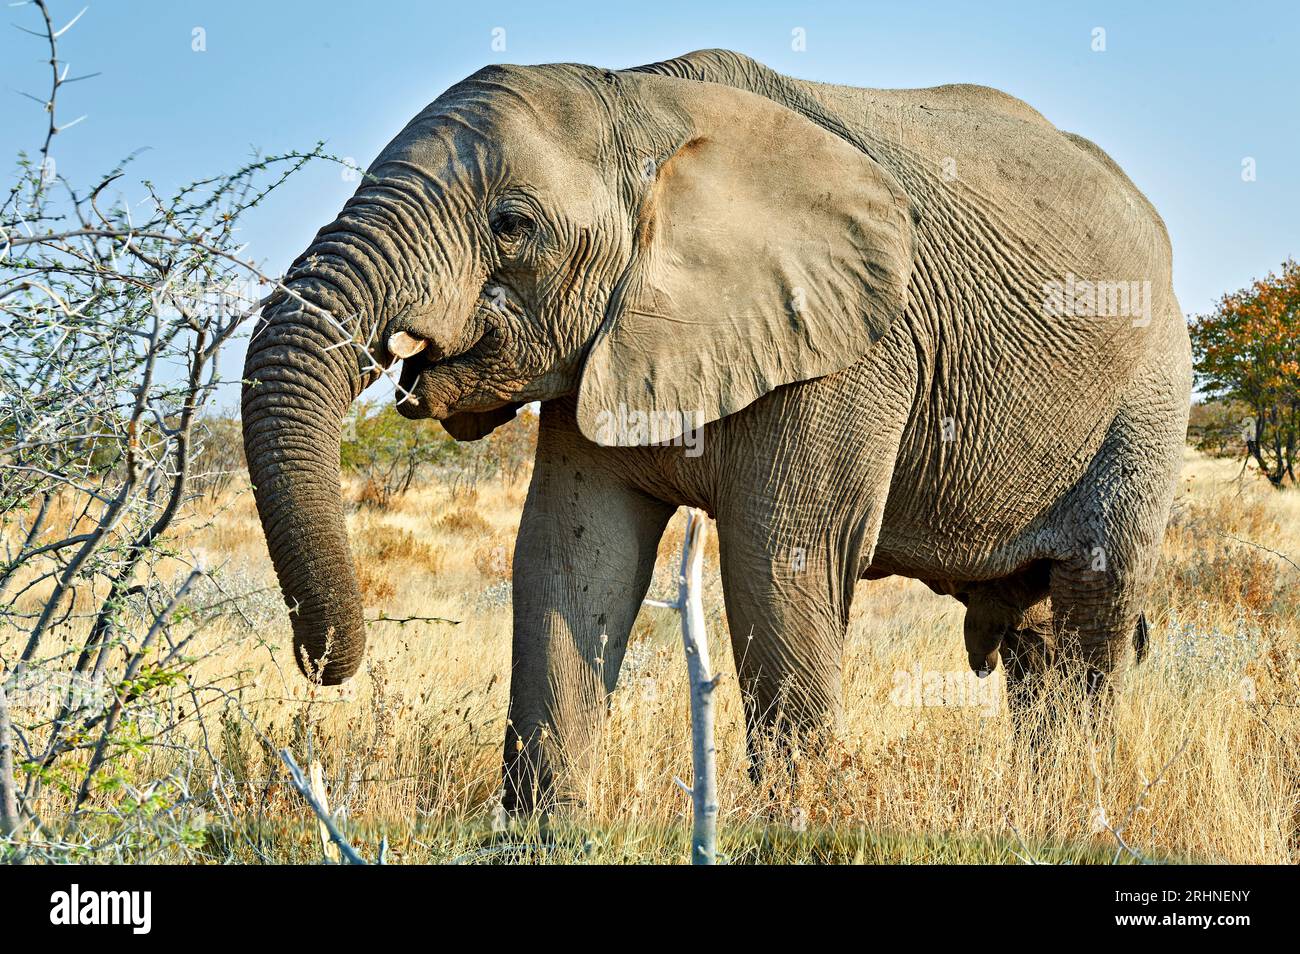 Namibia. Etosha National Park. Elephant in the wild Stock Photo